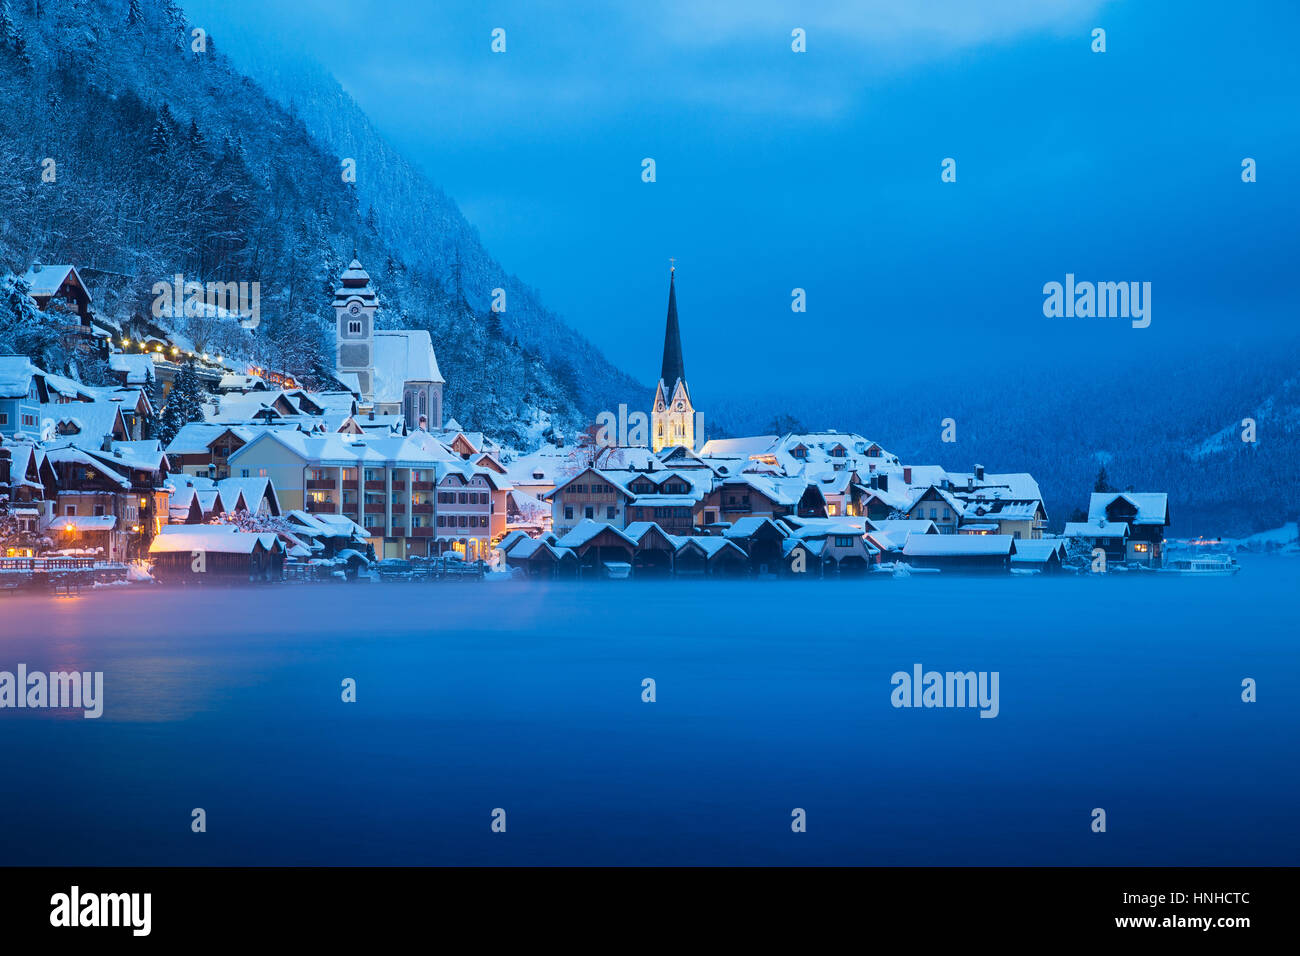 Vue de carte postale classique de la célèbre ville au bord du lac de Hallstatt dans les Alpes en mystic twilight à l'aube d'un jour brumeux froid en hiver, Salzkammergut, Autriche Banque D'Images